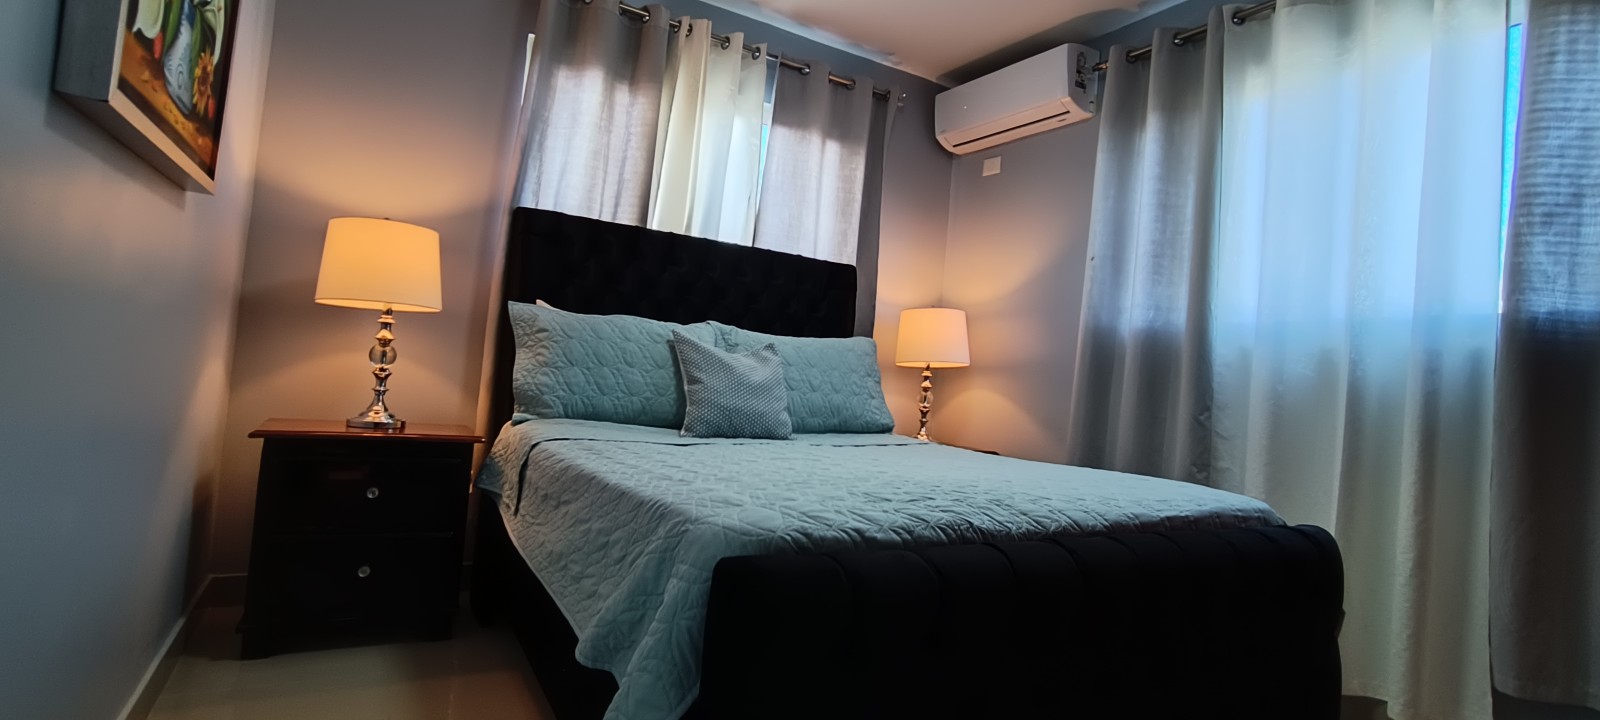 apartamentos - Airbnb AMUEBLADO en villa Olga seguro y confort 2